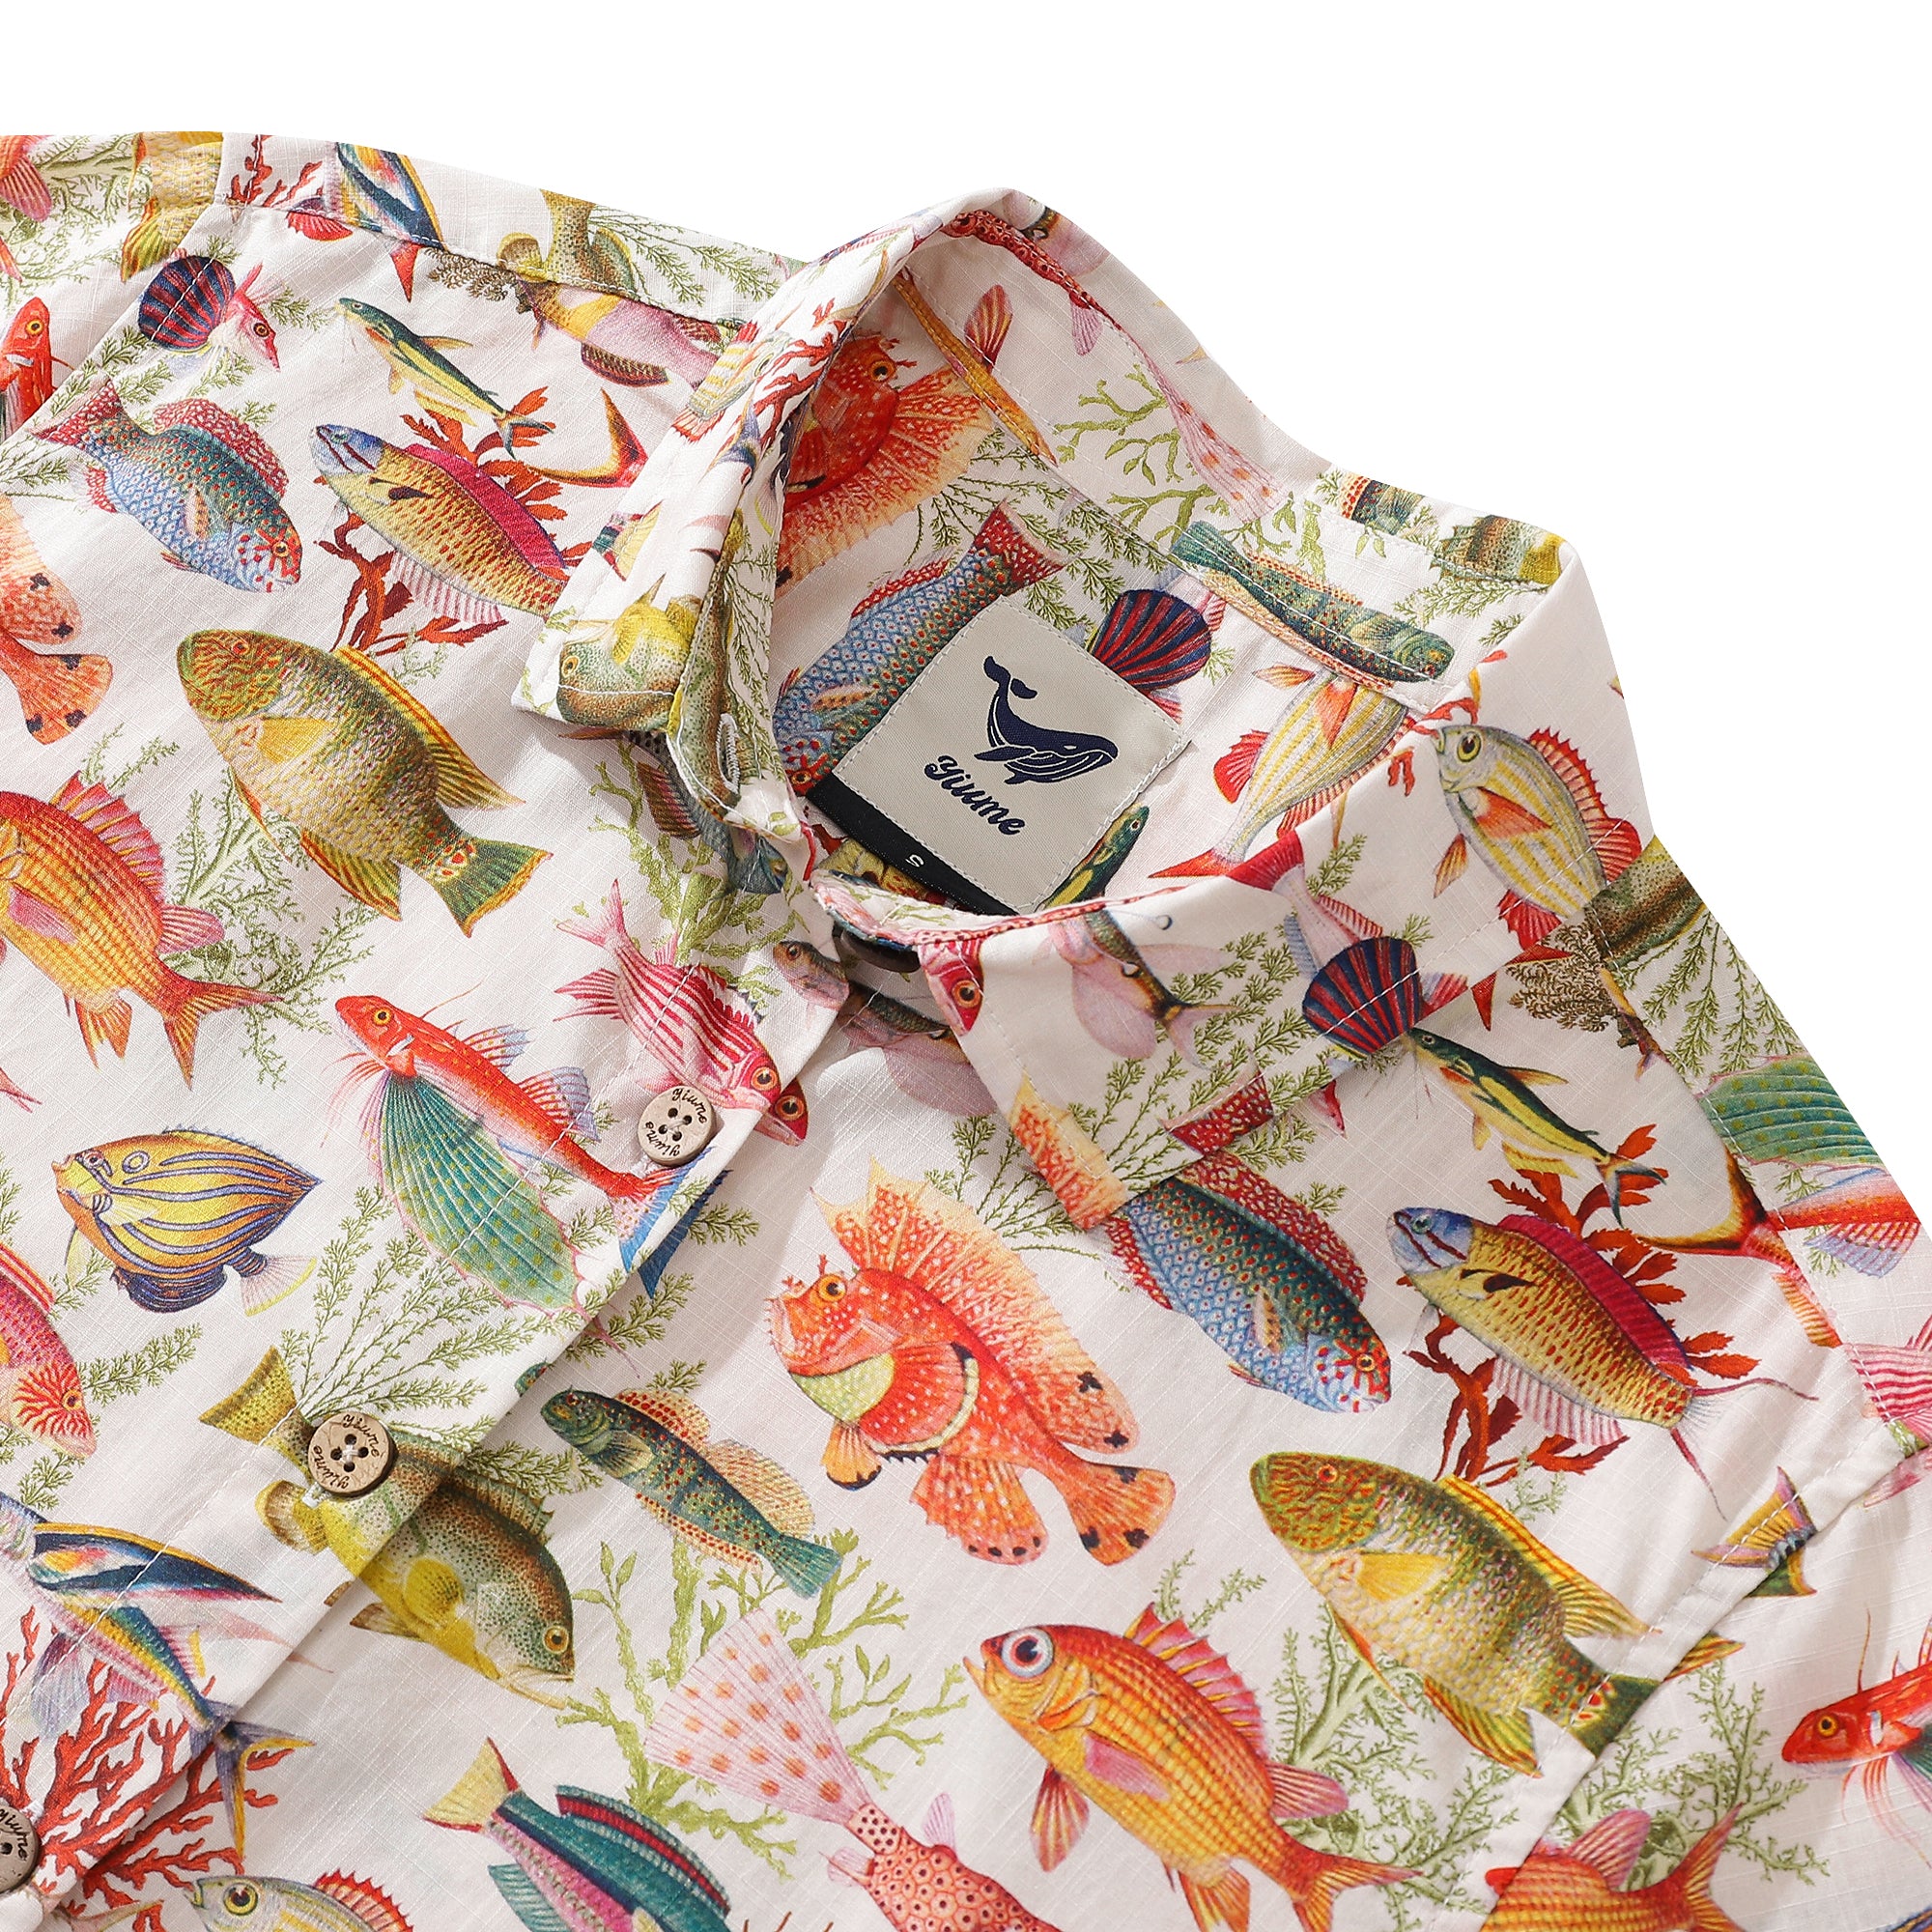 Camisa hawaiana de mujer con estampado de peces marinos y océano, manga corta con botones de algodón